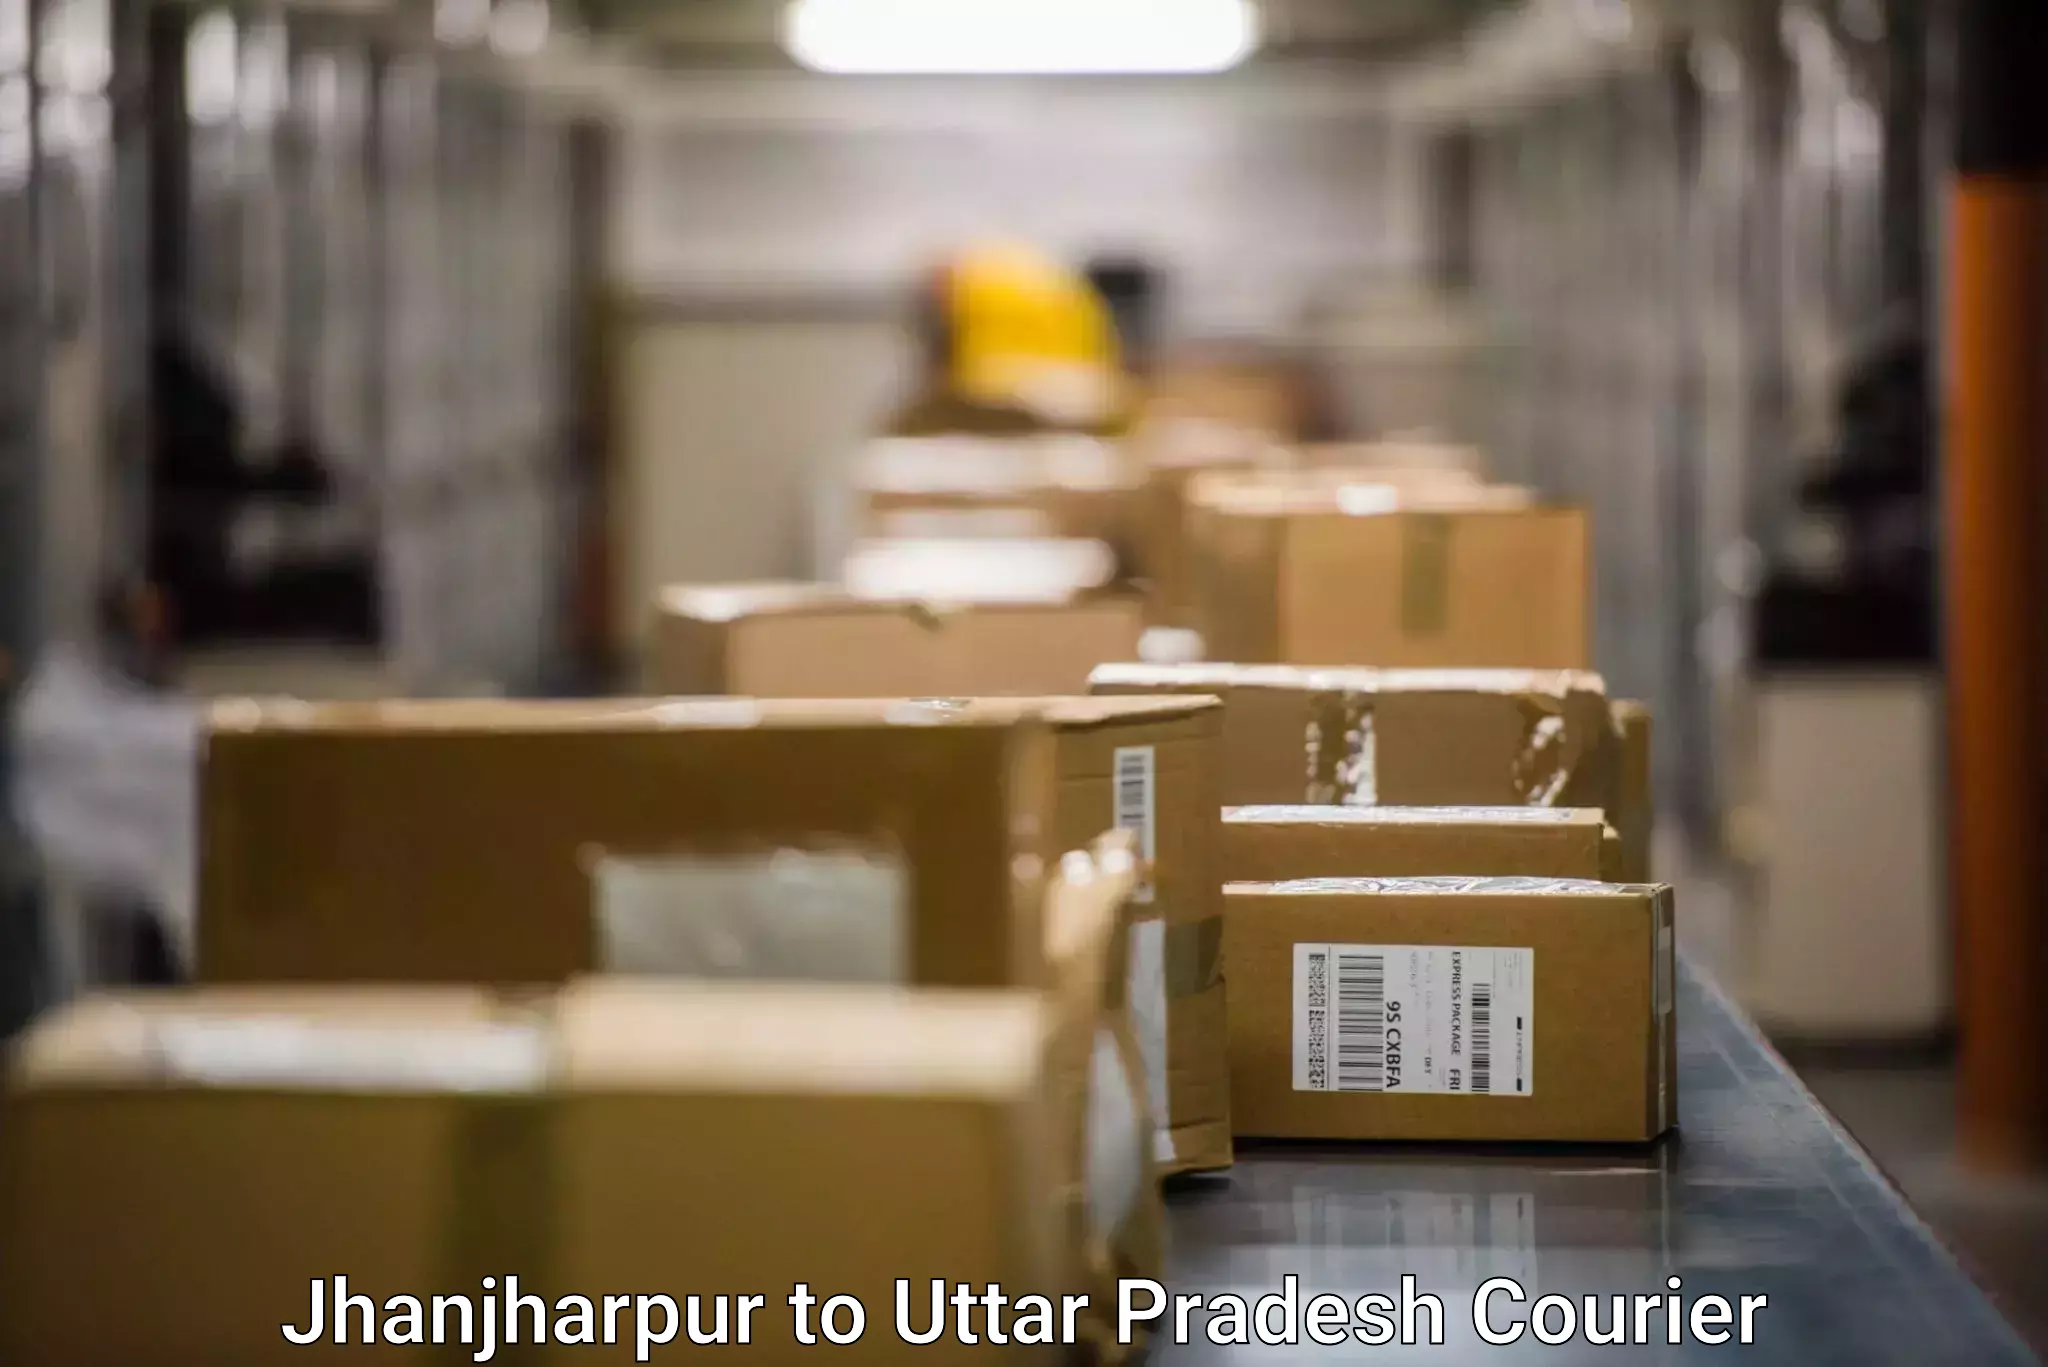 Fast shipping solutions Jhanjharpur to Uttar Pradesh